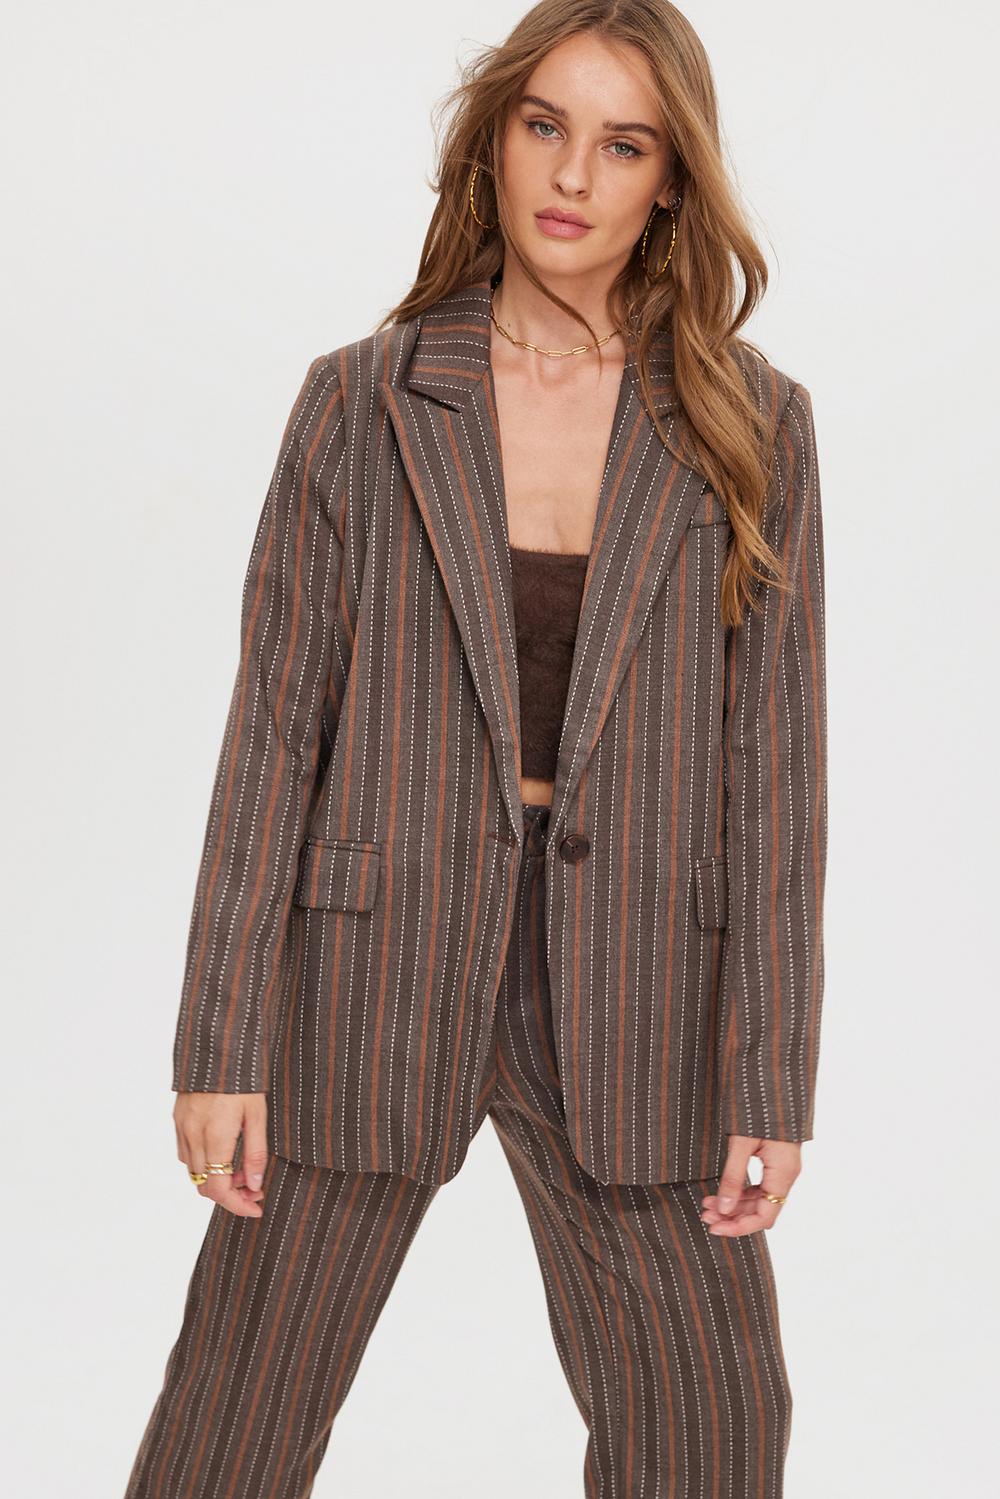 Brown blazer with stripes